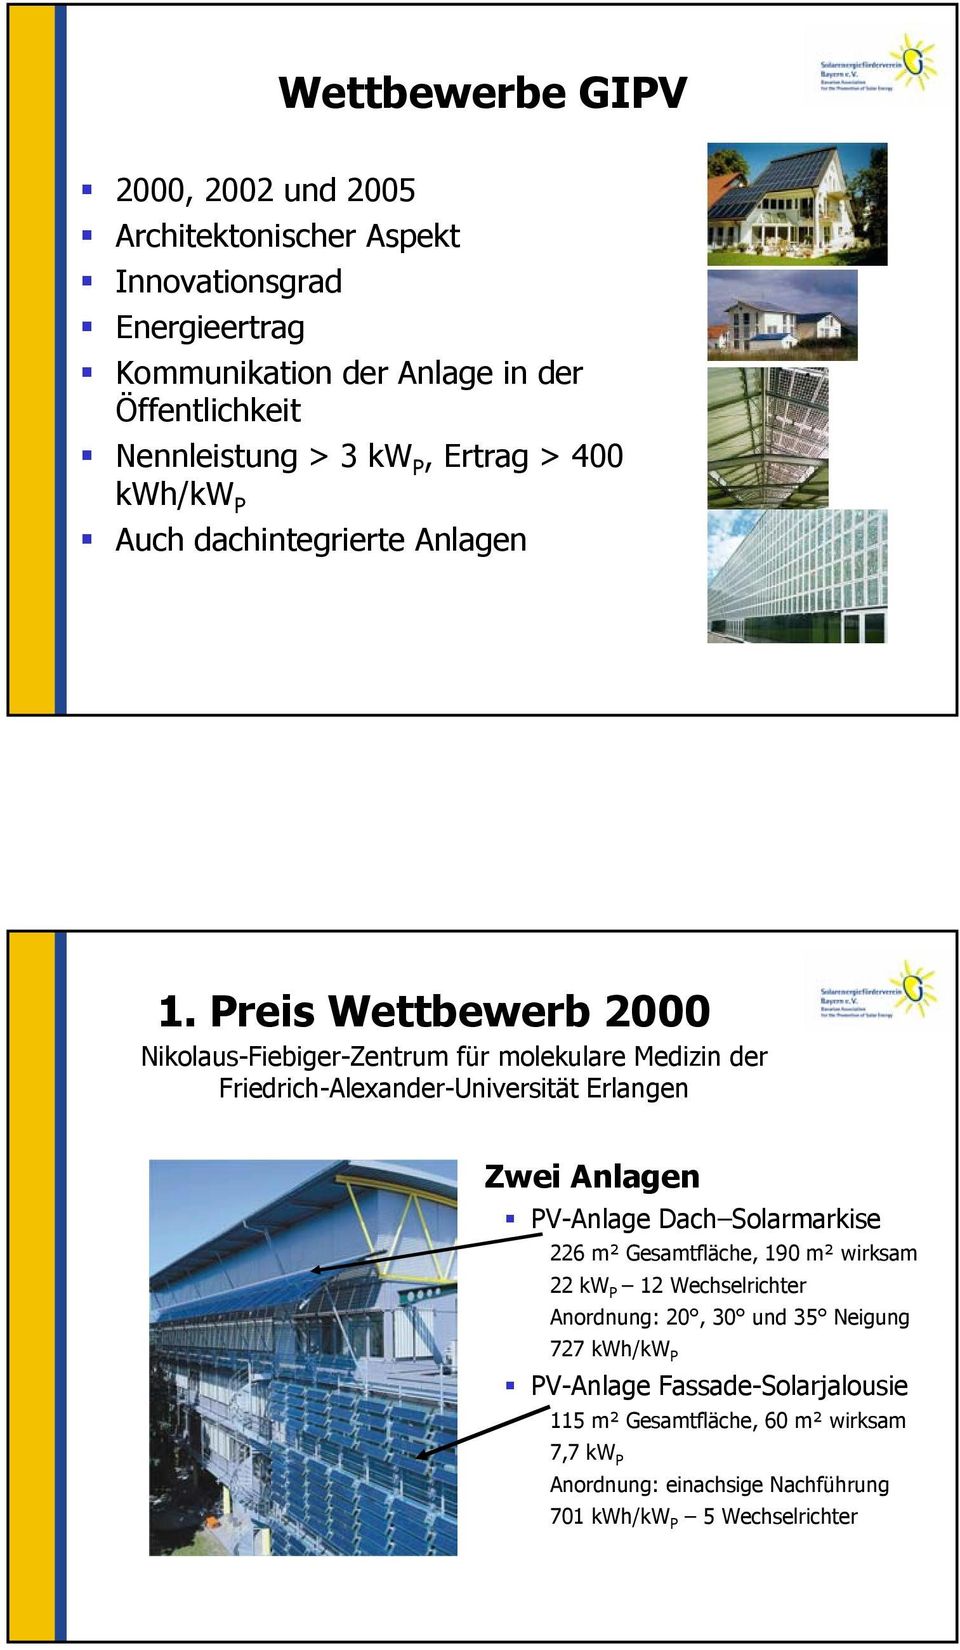 Preis Wettbewerb 2000 Nikolaus-Fiebiger-Zentrum für molekulare Medizin der Friedrich-Alexander-Universität Erlangen Zwei Anlagen PV-Anlage Dach